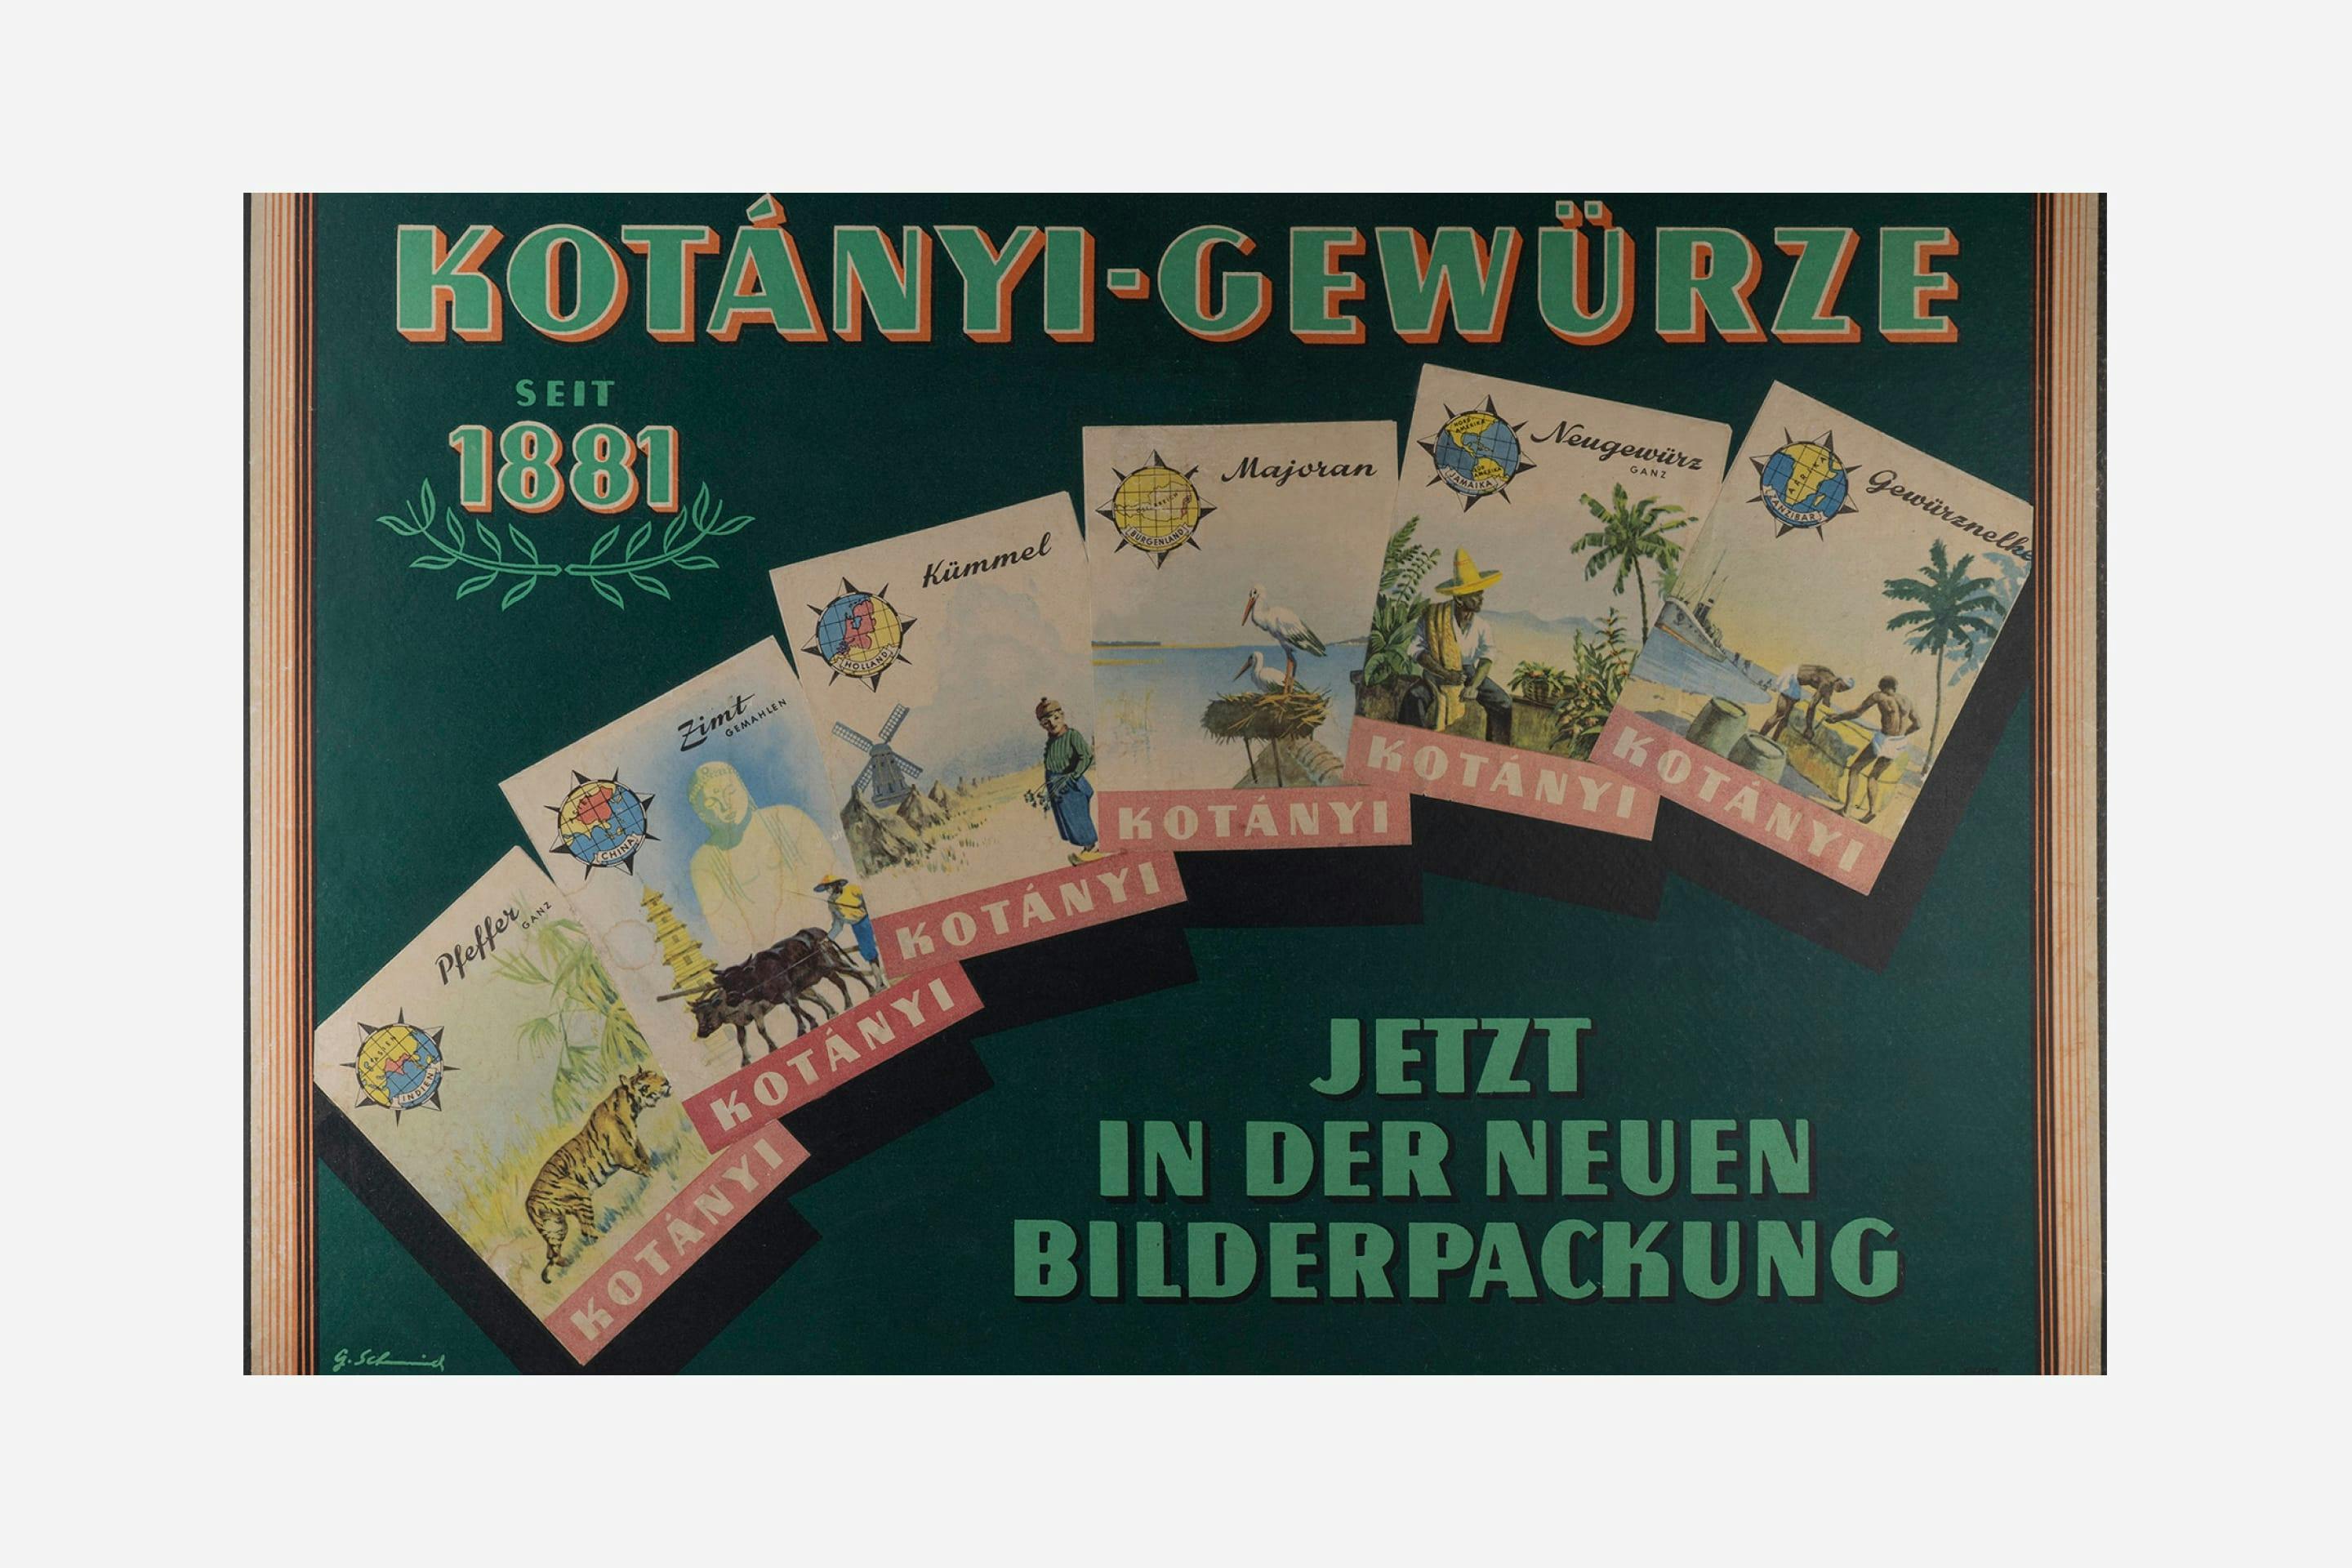 Kotányi Werbeplakat von 1970 zu den Bilderpackungen